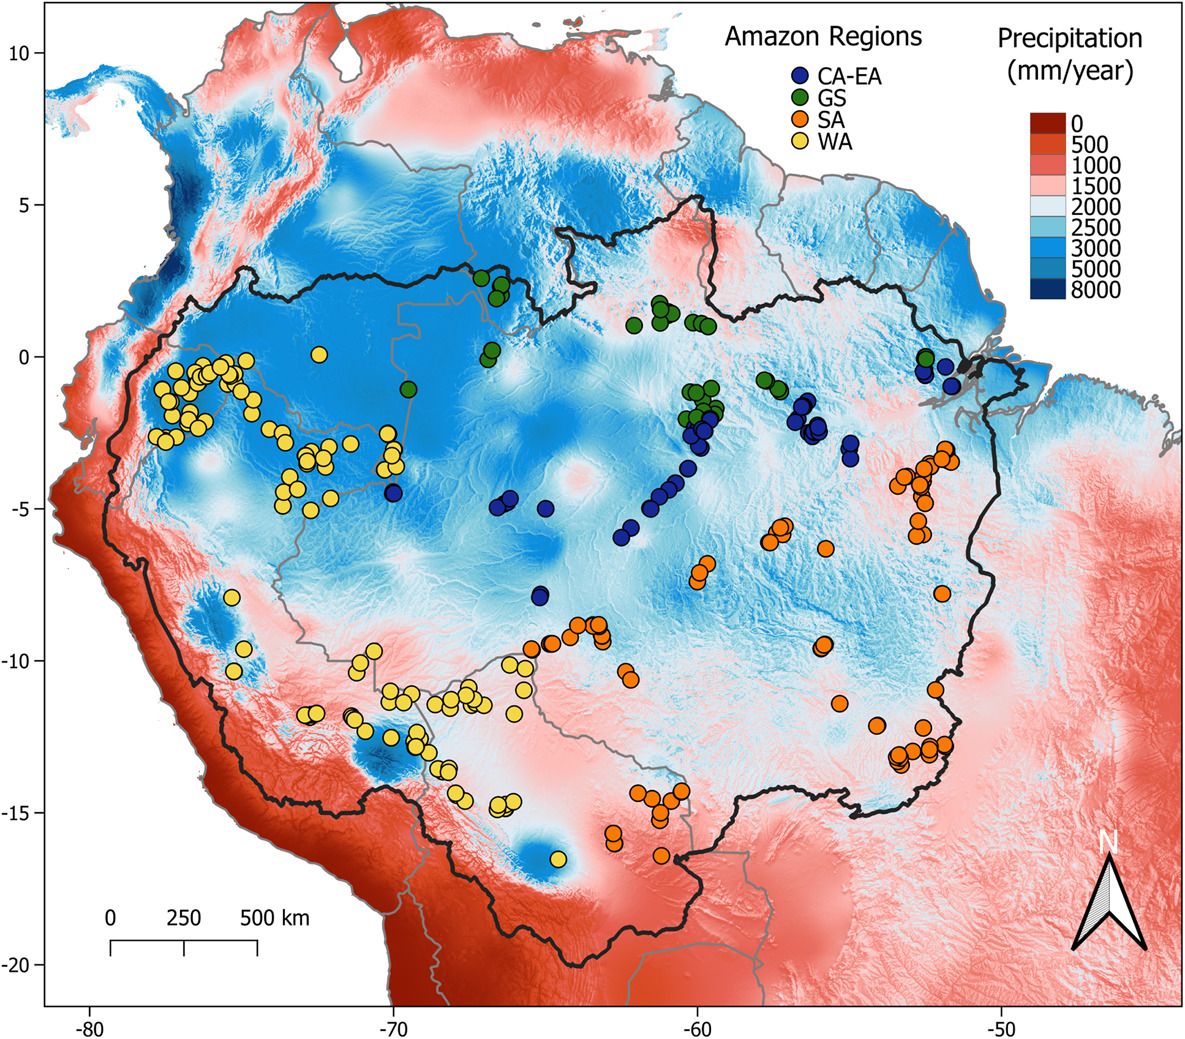 condições hidrológicas locais influenciam a diversidade e a composição das árvores em toda a bacia amazônica